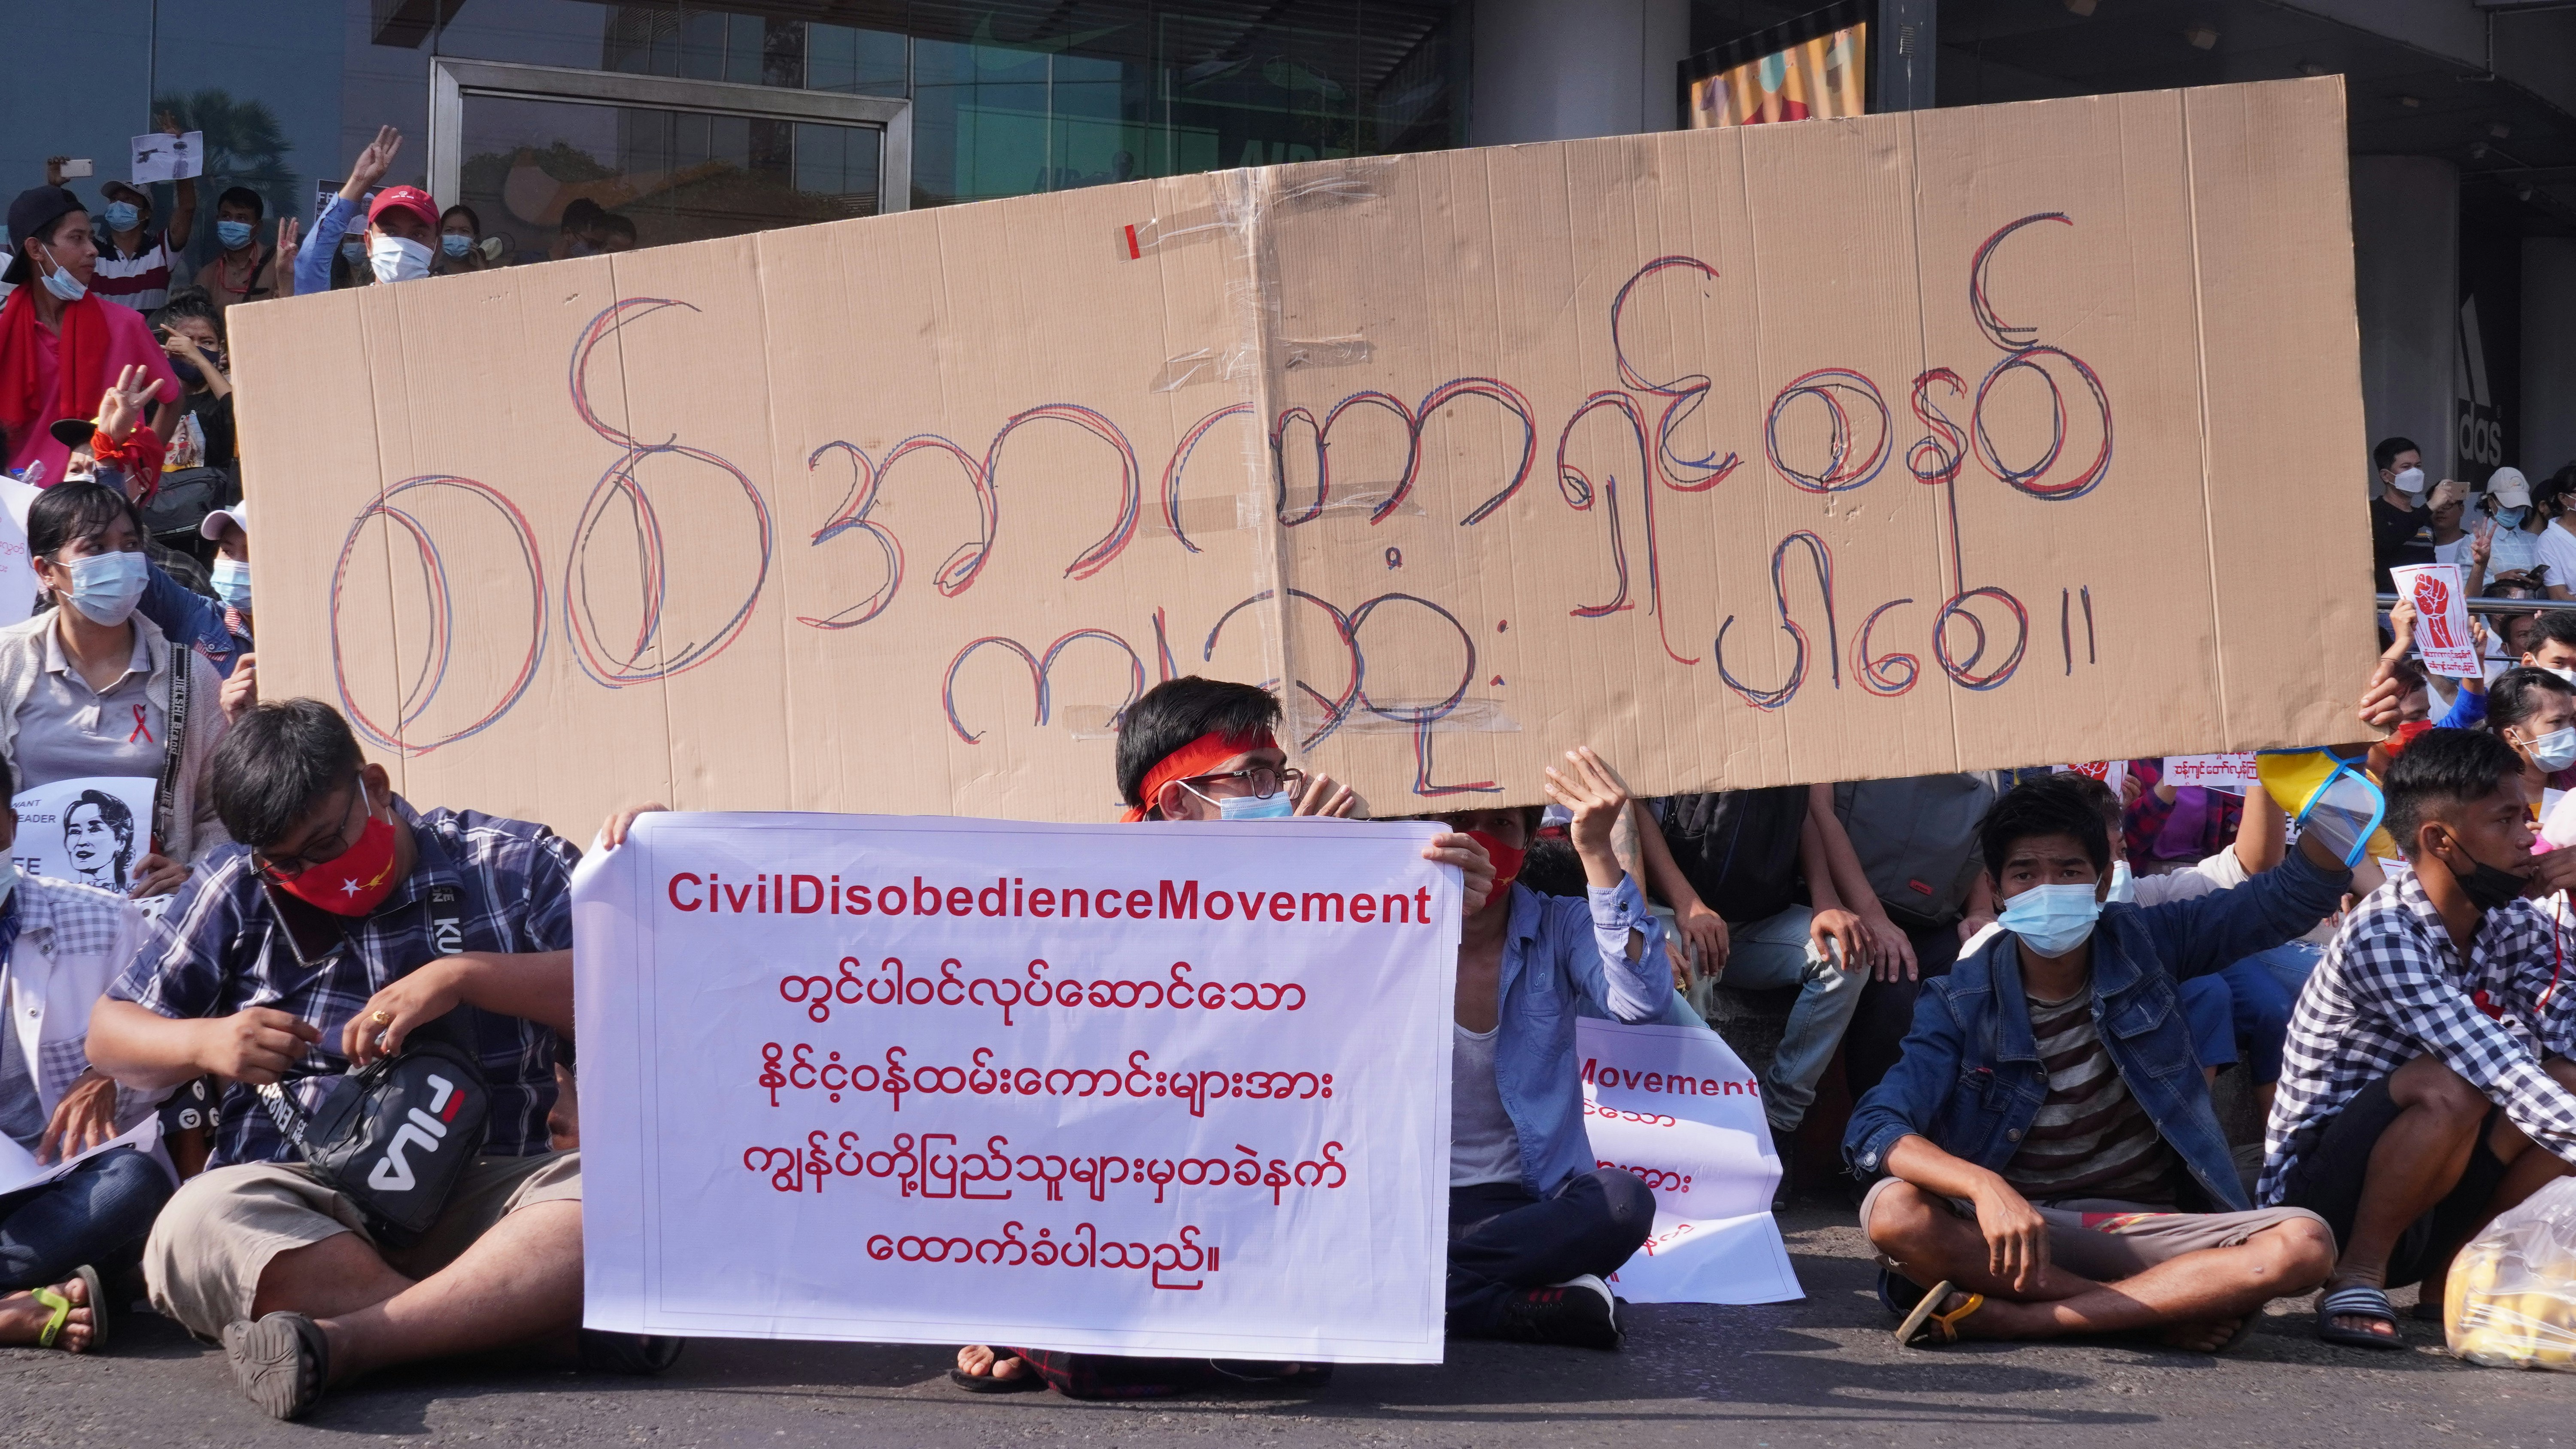 Military Junta must be knees down 
YGN, Myanmar 